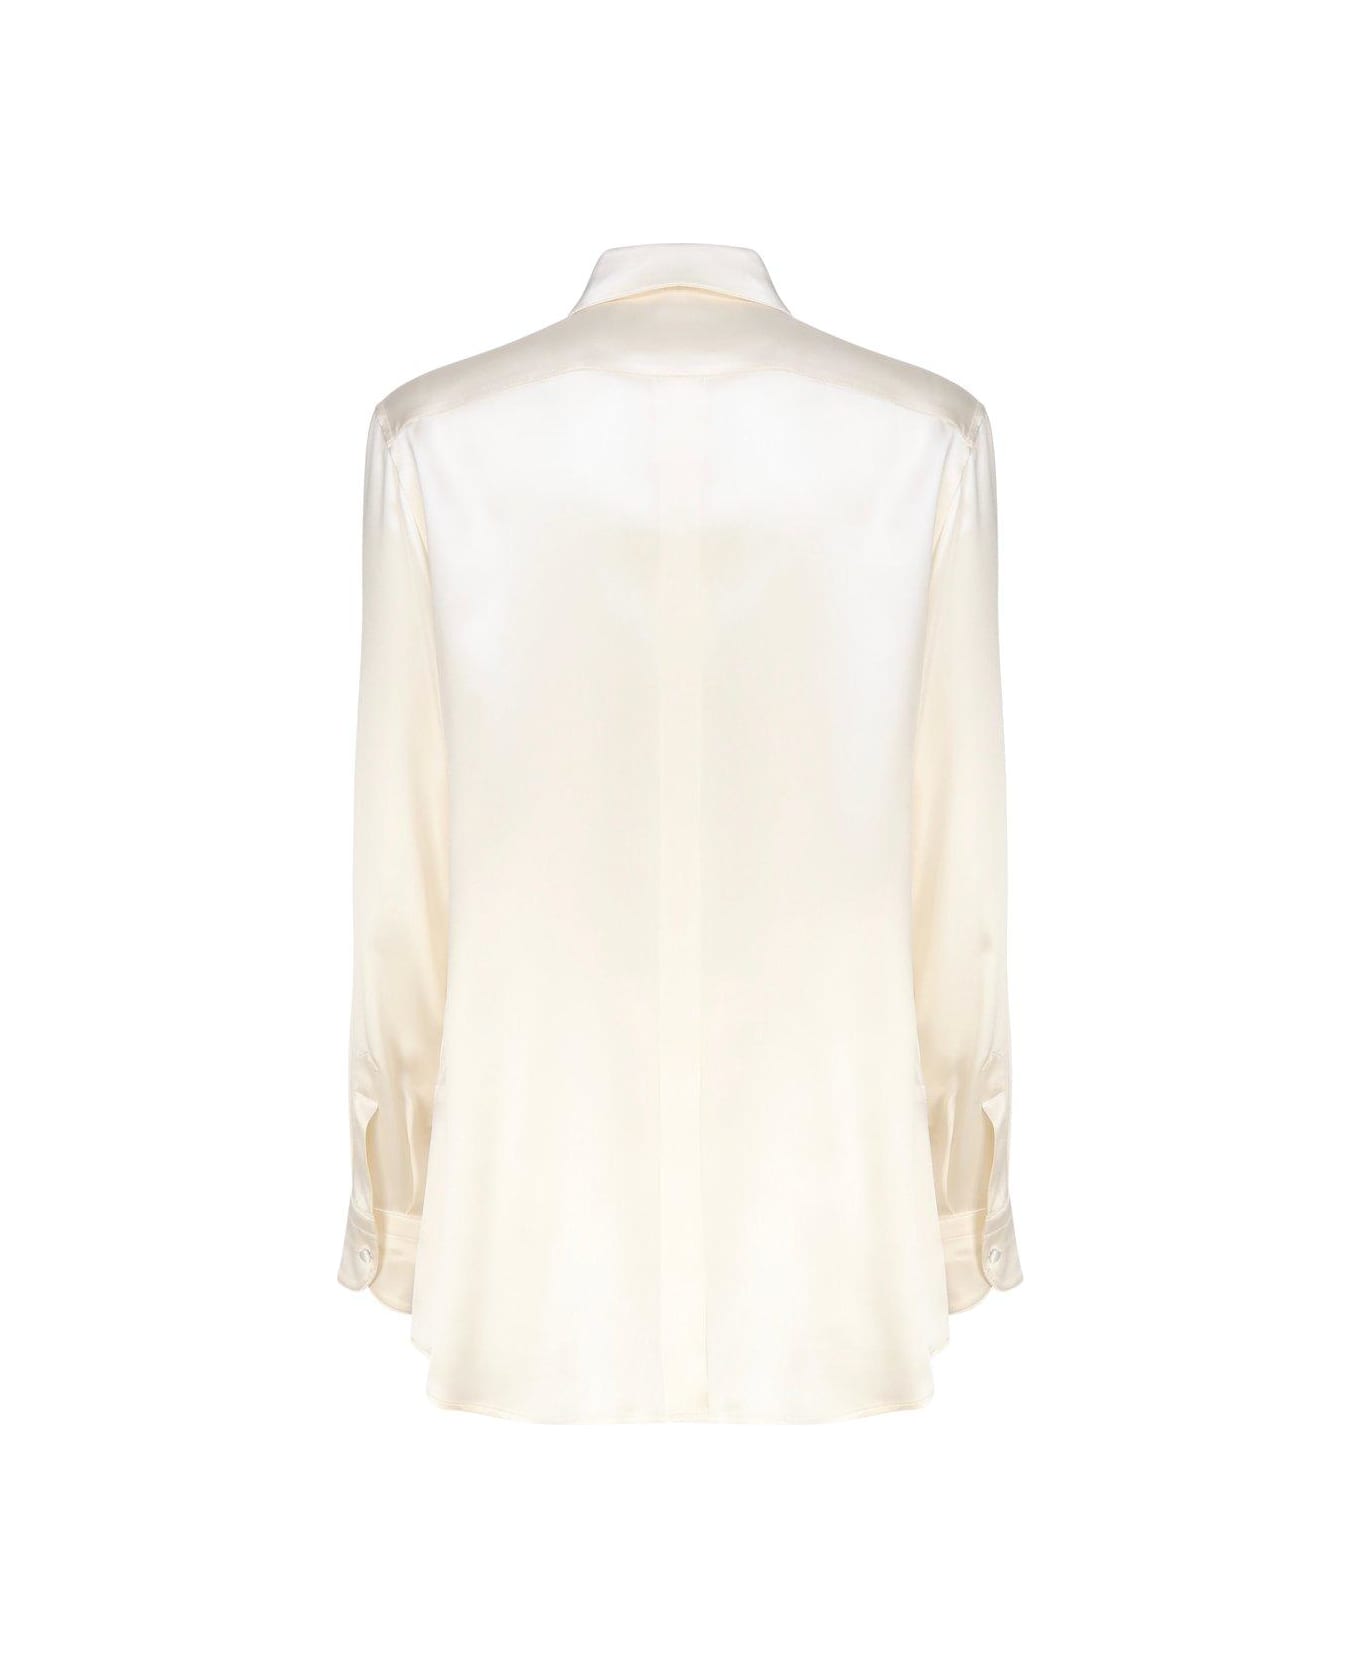 Dolce & Gabbana Long-sleeved Satin Shirt - Bianco シャツ